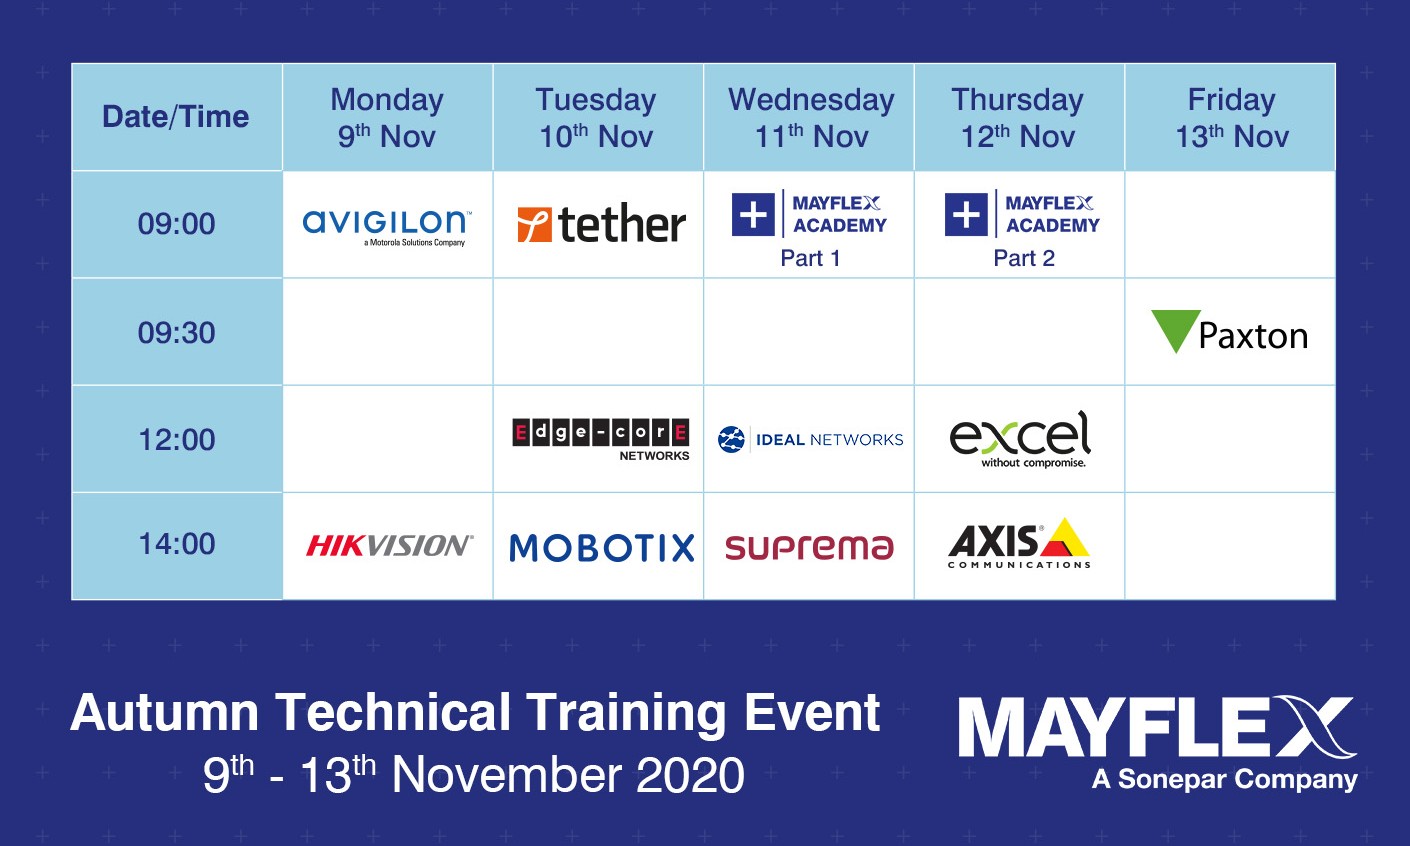 Mayflex host an Autumn technical training event